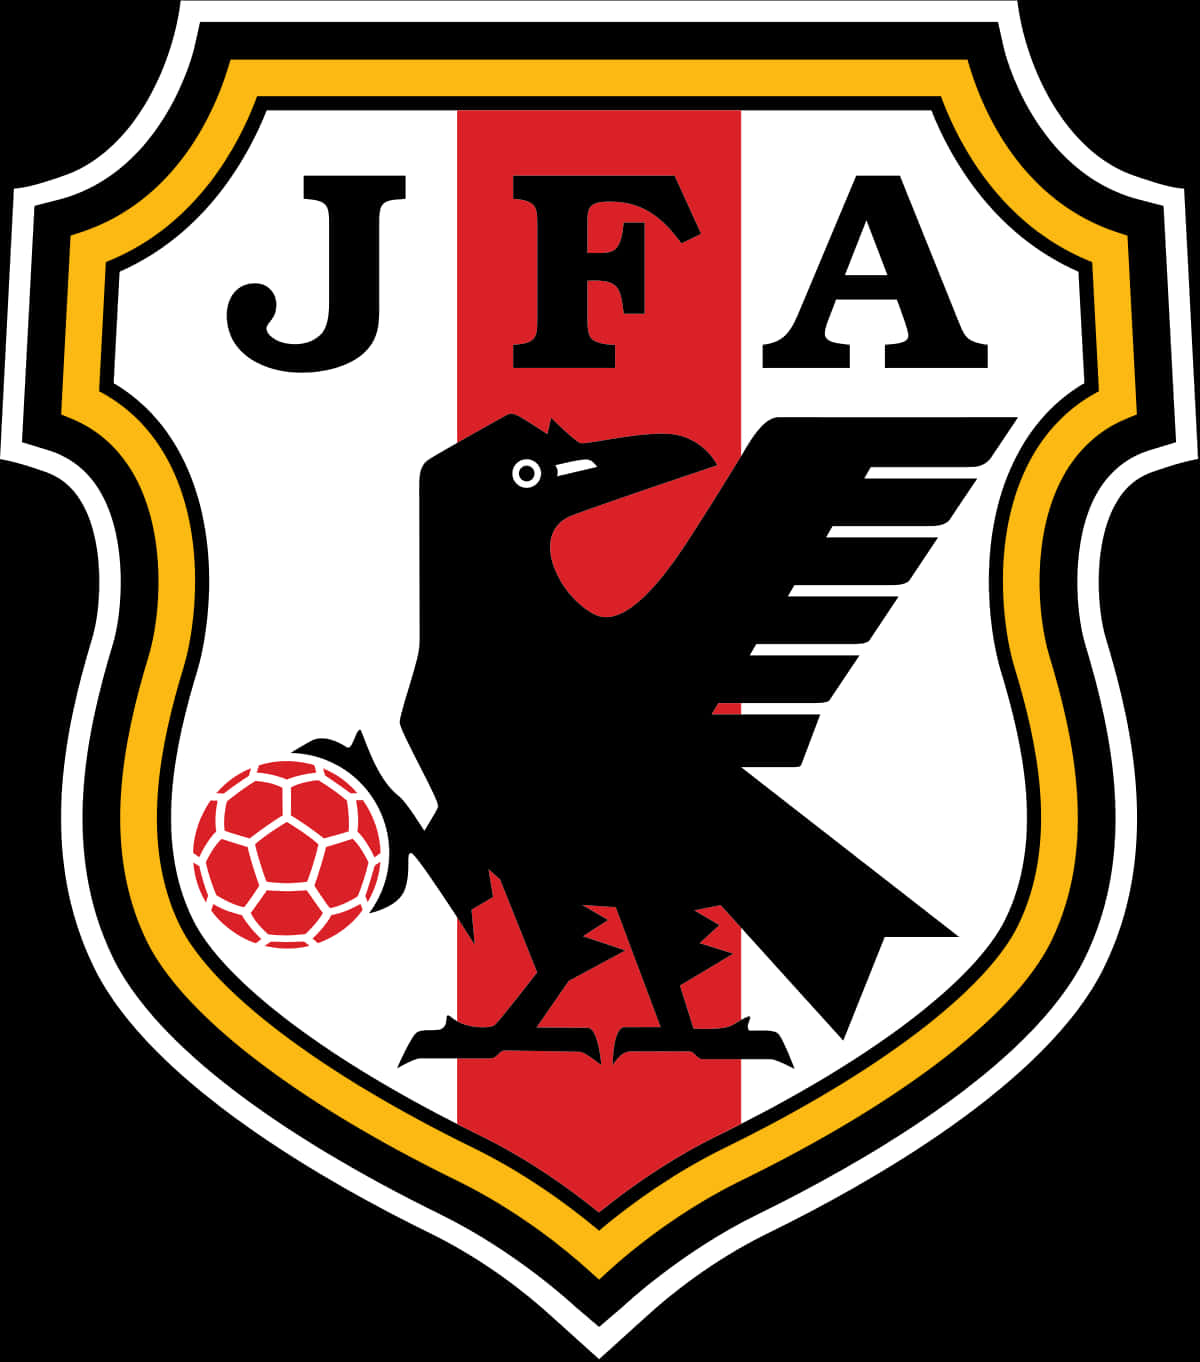 Japan Football Association Crest PNG image